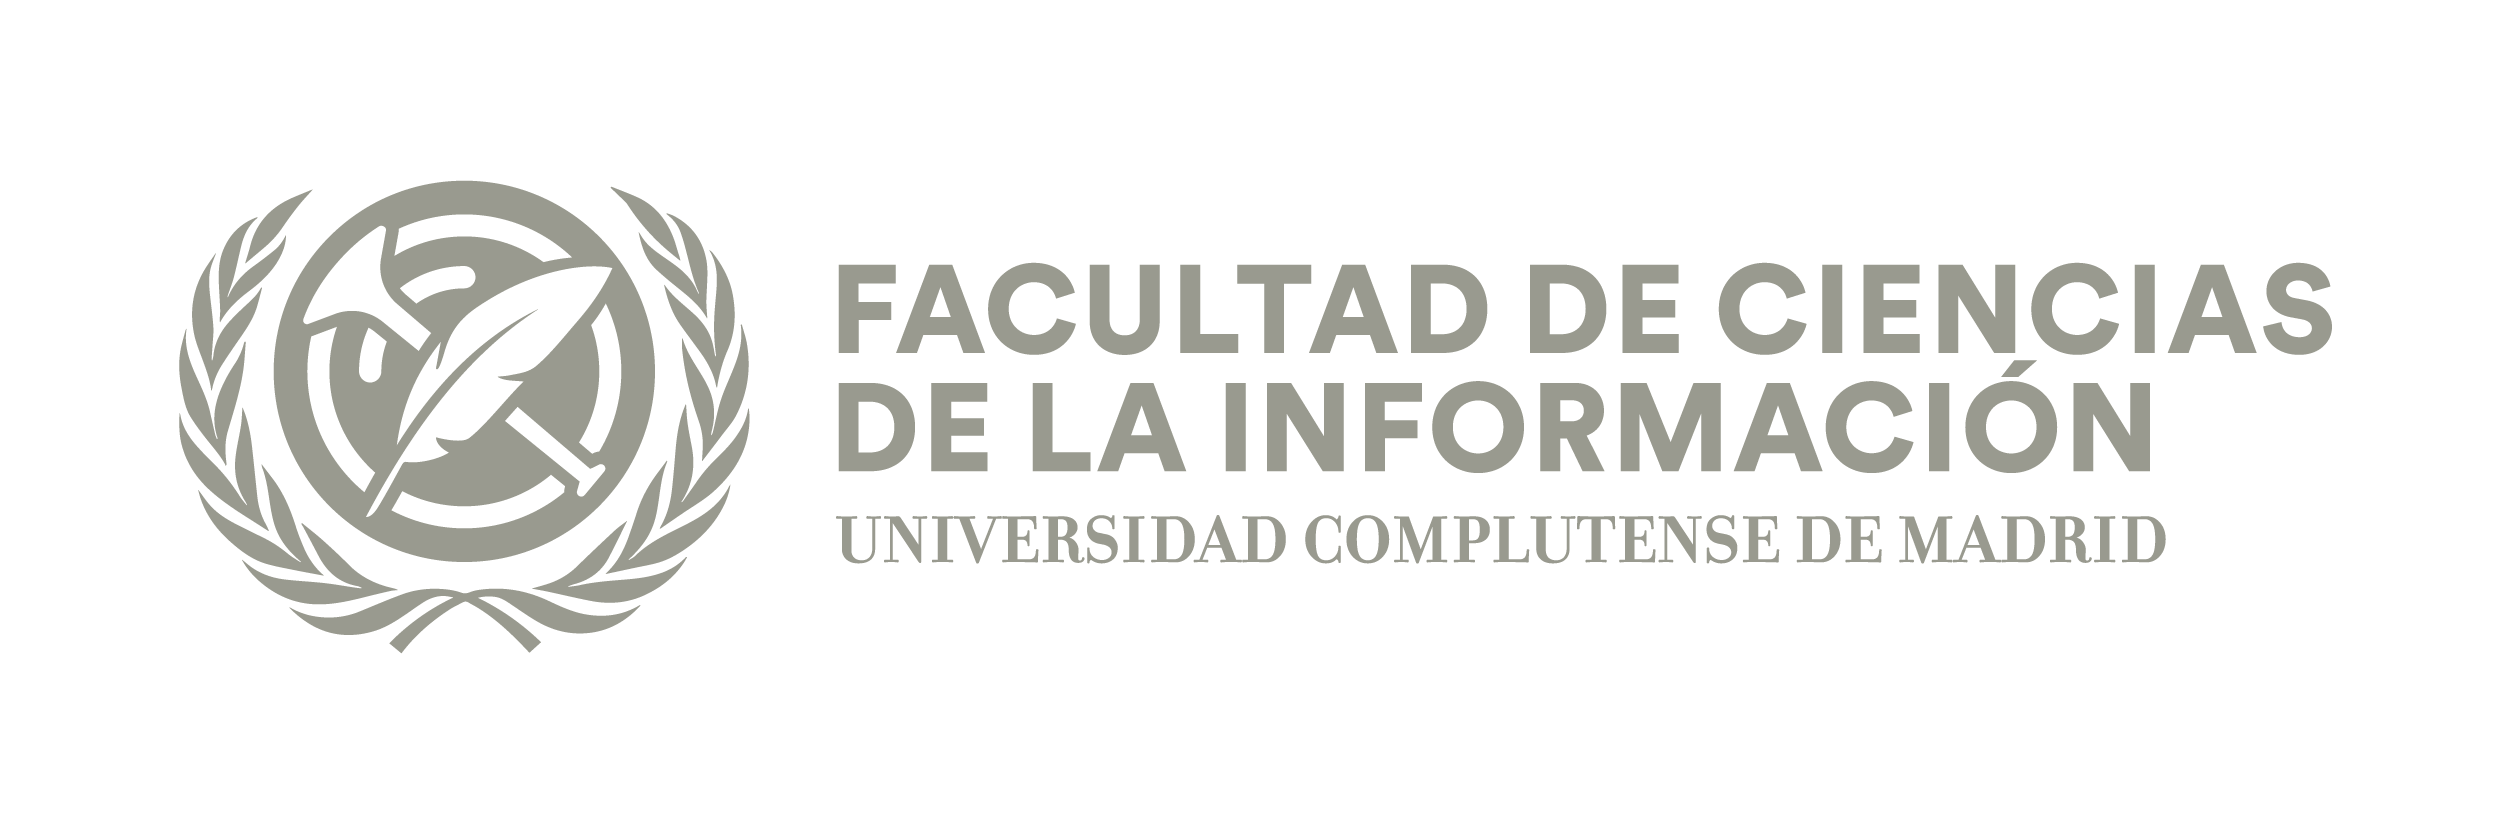 La Facultad de Ciencias de la Información recibirá la Medalla de la  Comunidad de Madrid el próximo 2 de mayo | Universidad Complutense de Madrid